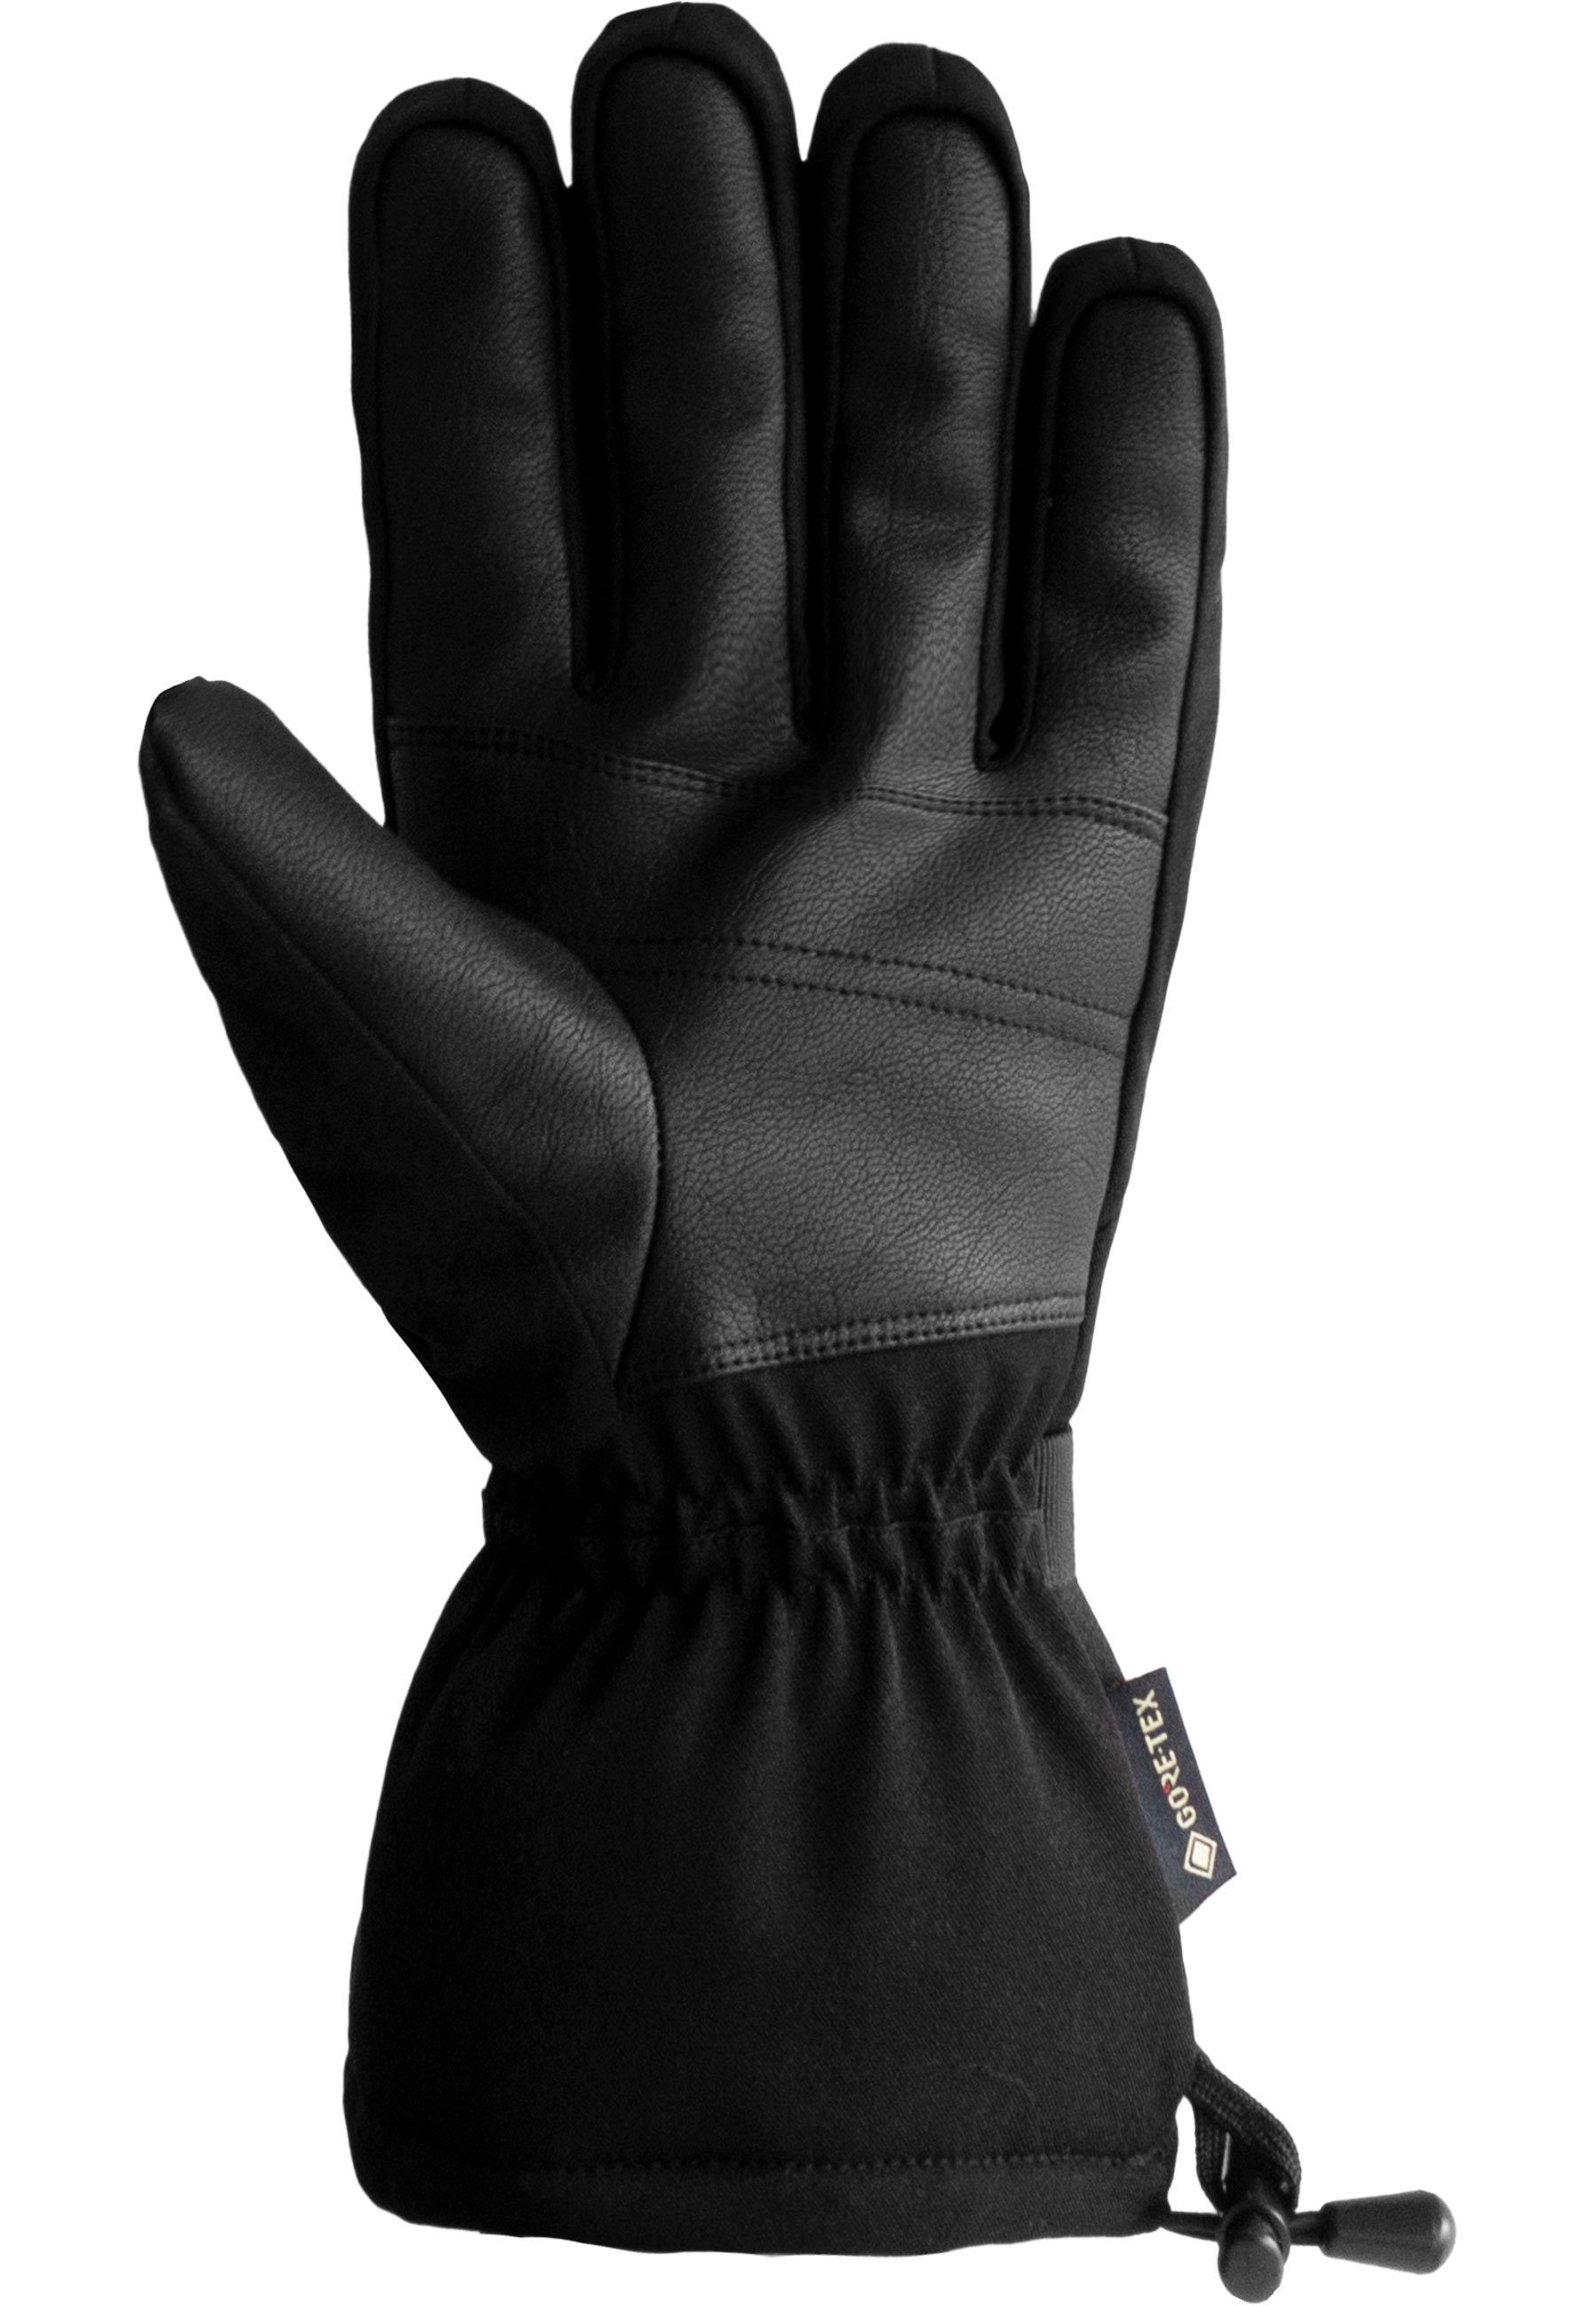 und Winter wasserdichtem aus GORE-TEX atmungsaktivem Glove Skihandschuhe Reusch Material Warm